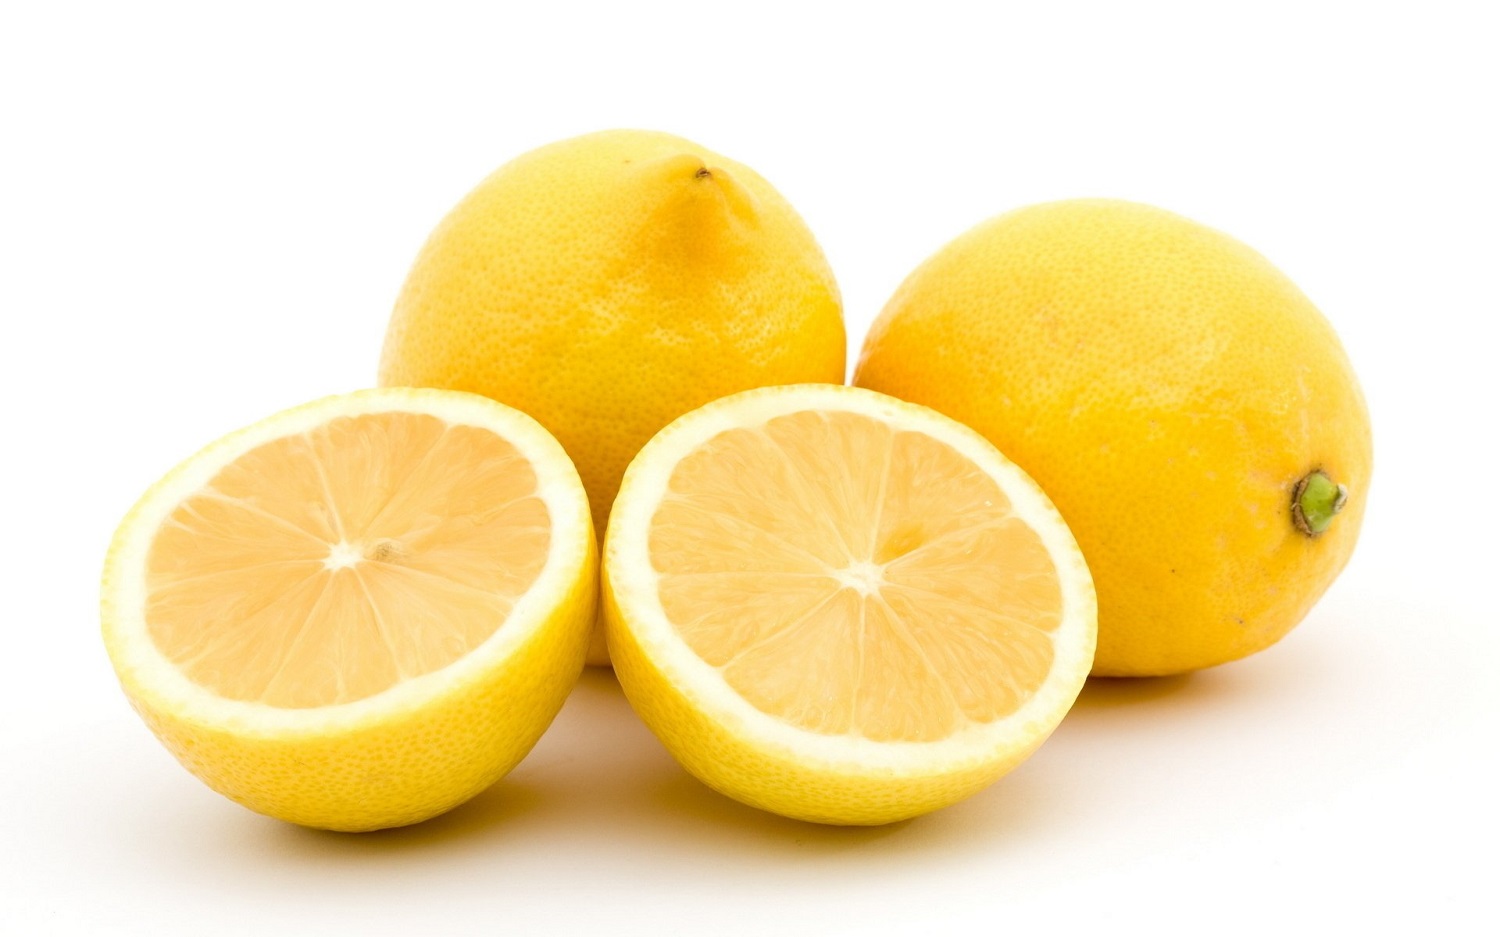 Fragrance notes Lemon